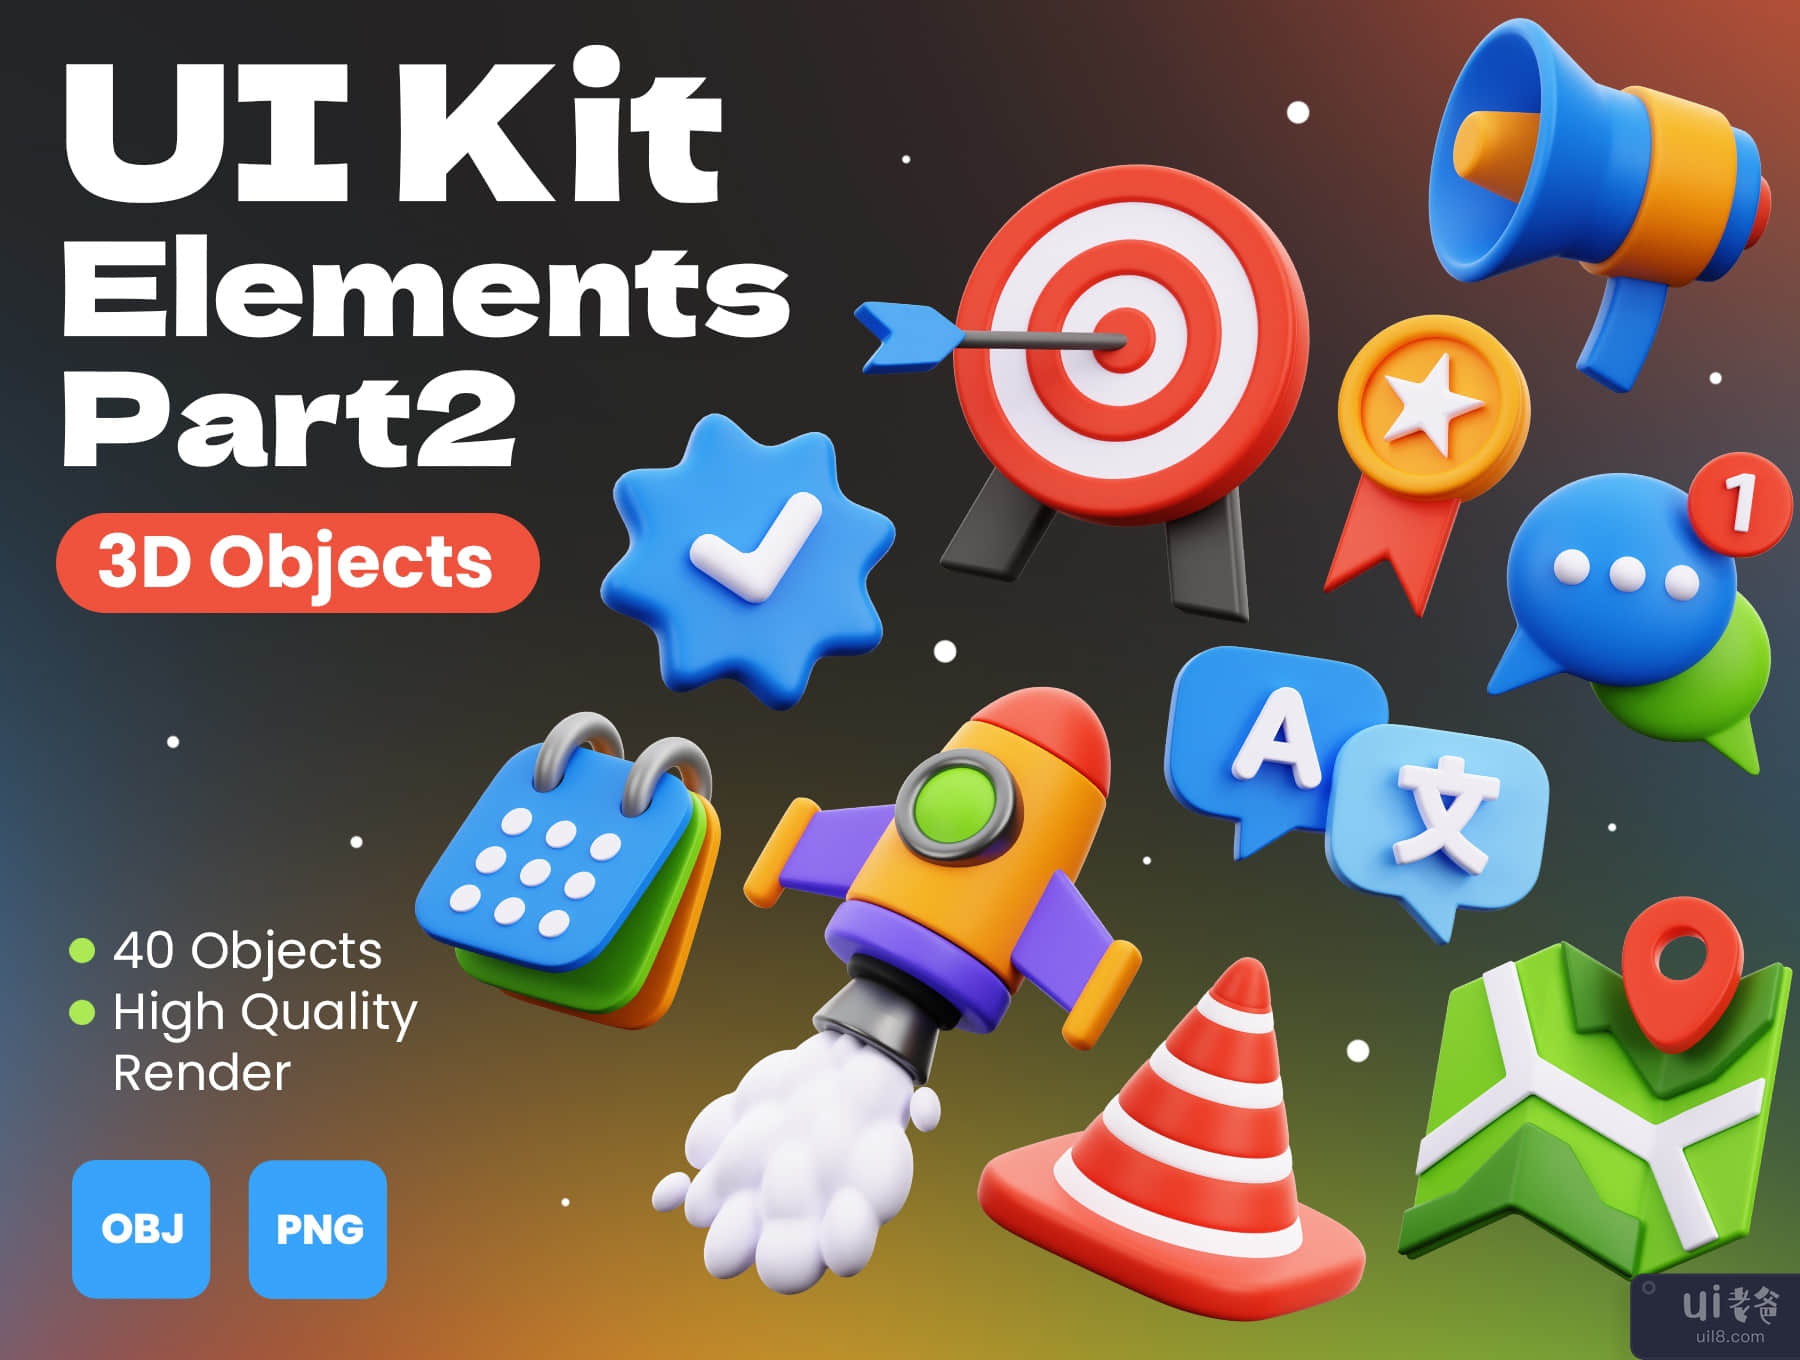 3D UI 套装元素第 2 部分 (3D UI Kit Elements Part 2)插图5